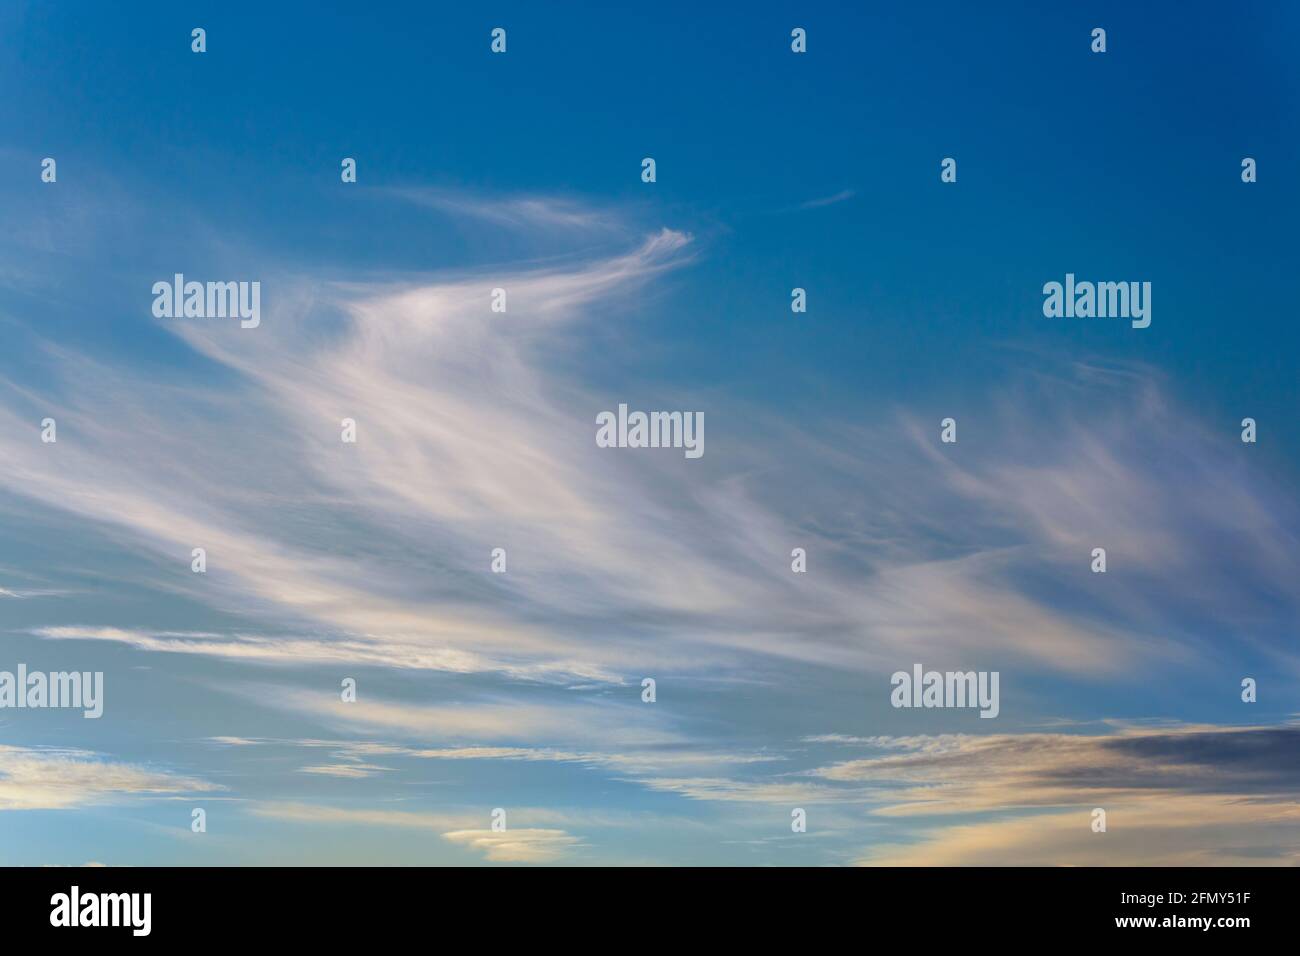 Wispy clouds, Wales, UK Stock Photo